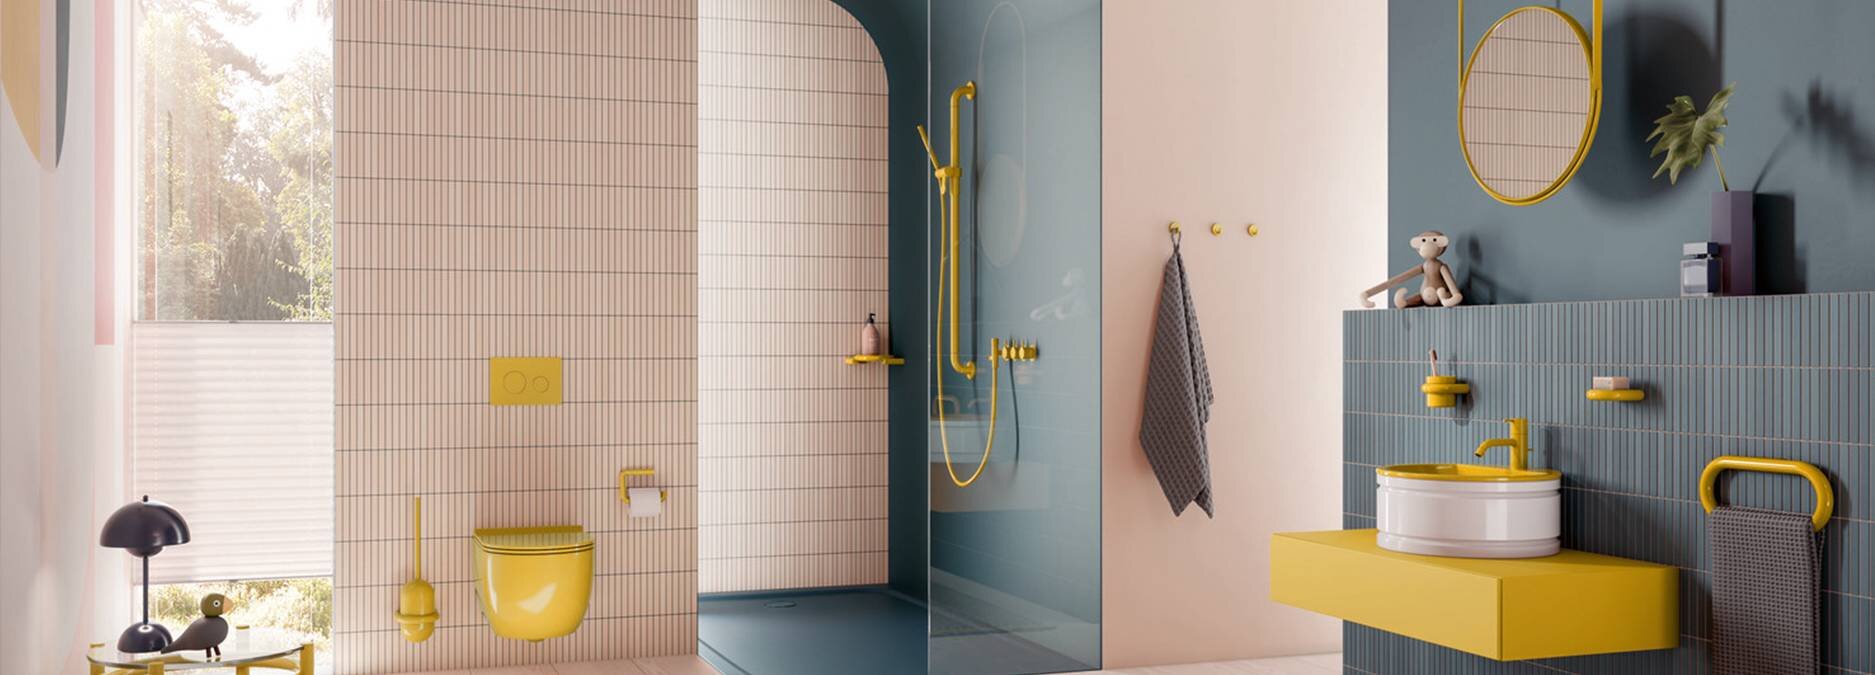 Stilvolle Blickfänge: Farbige Accessoires im Badezimmer - Stilvolle Blickfänge: Farbige Accessoires im Badezimmer